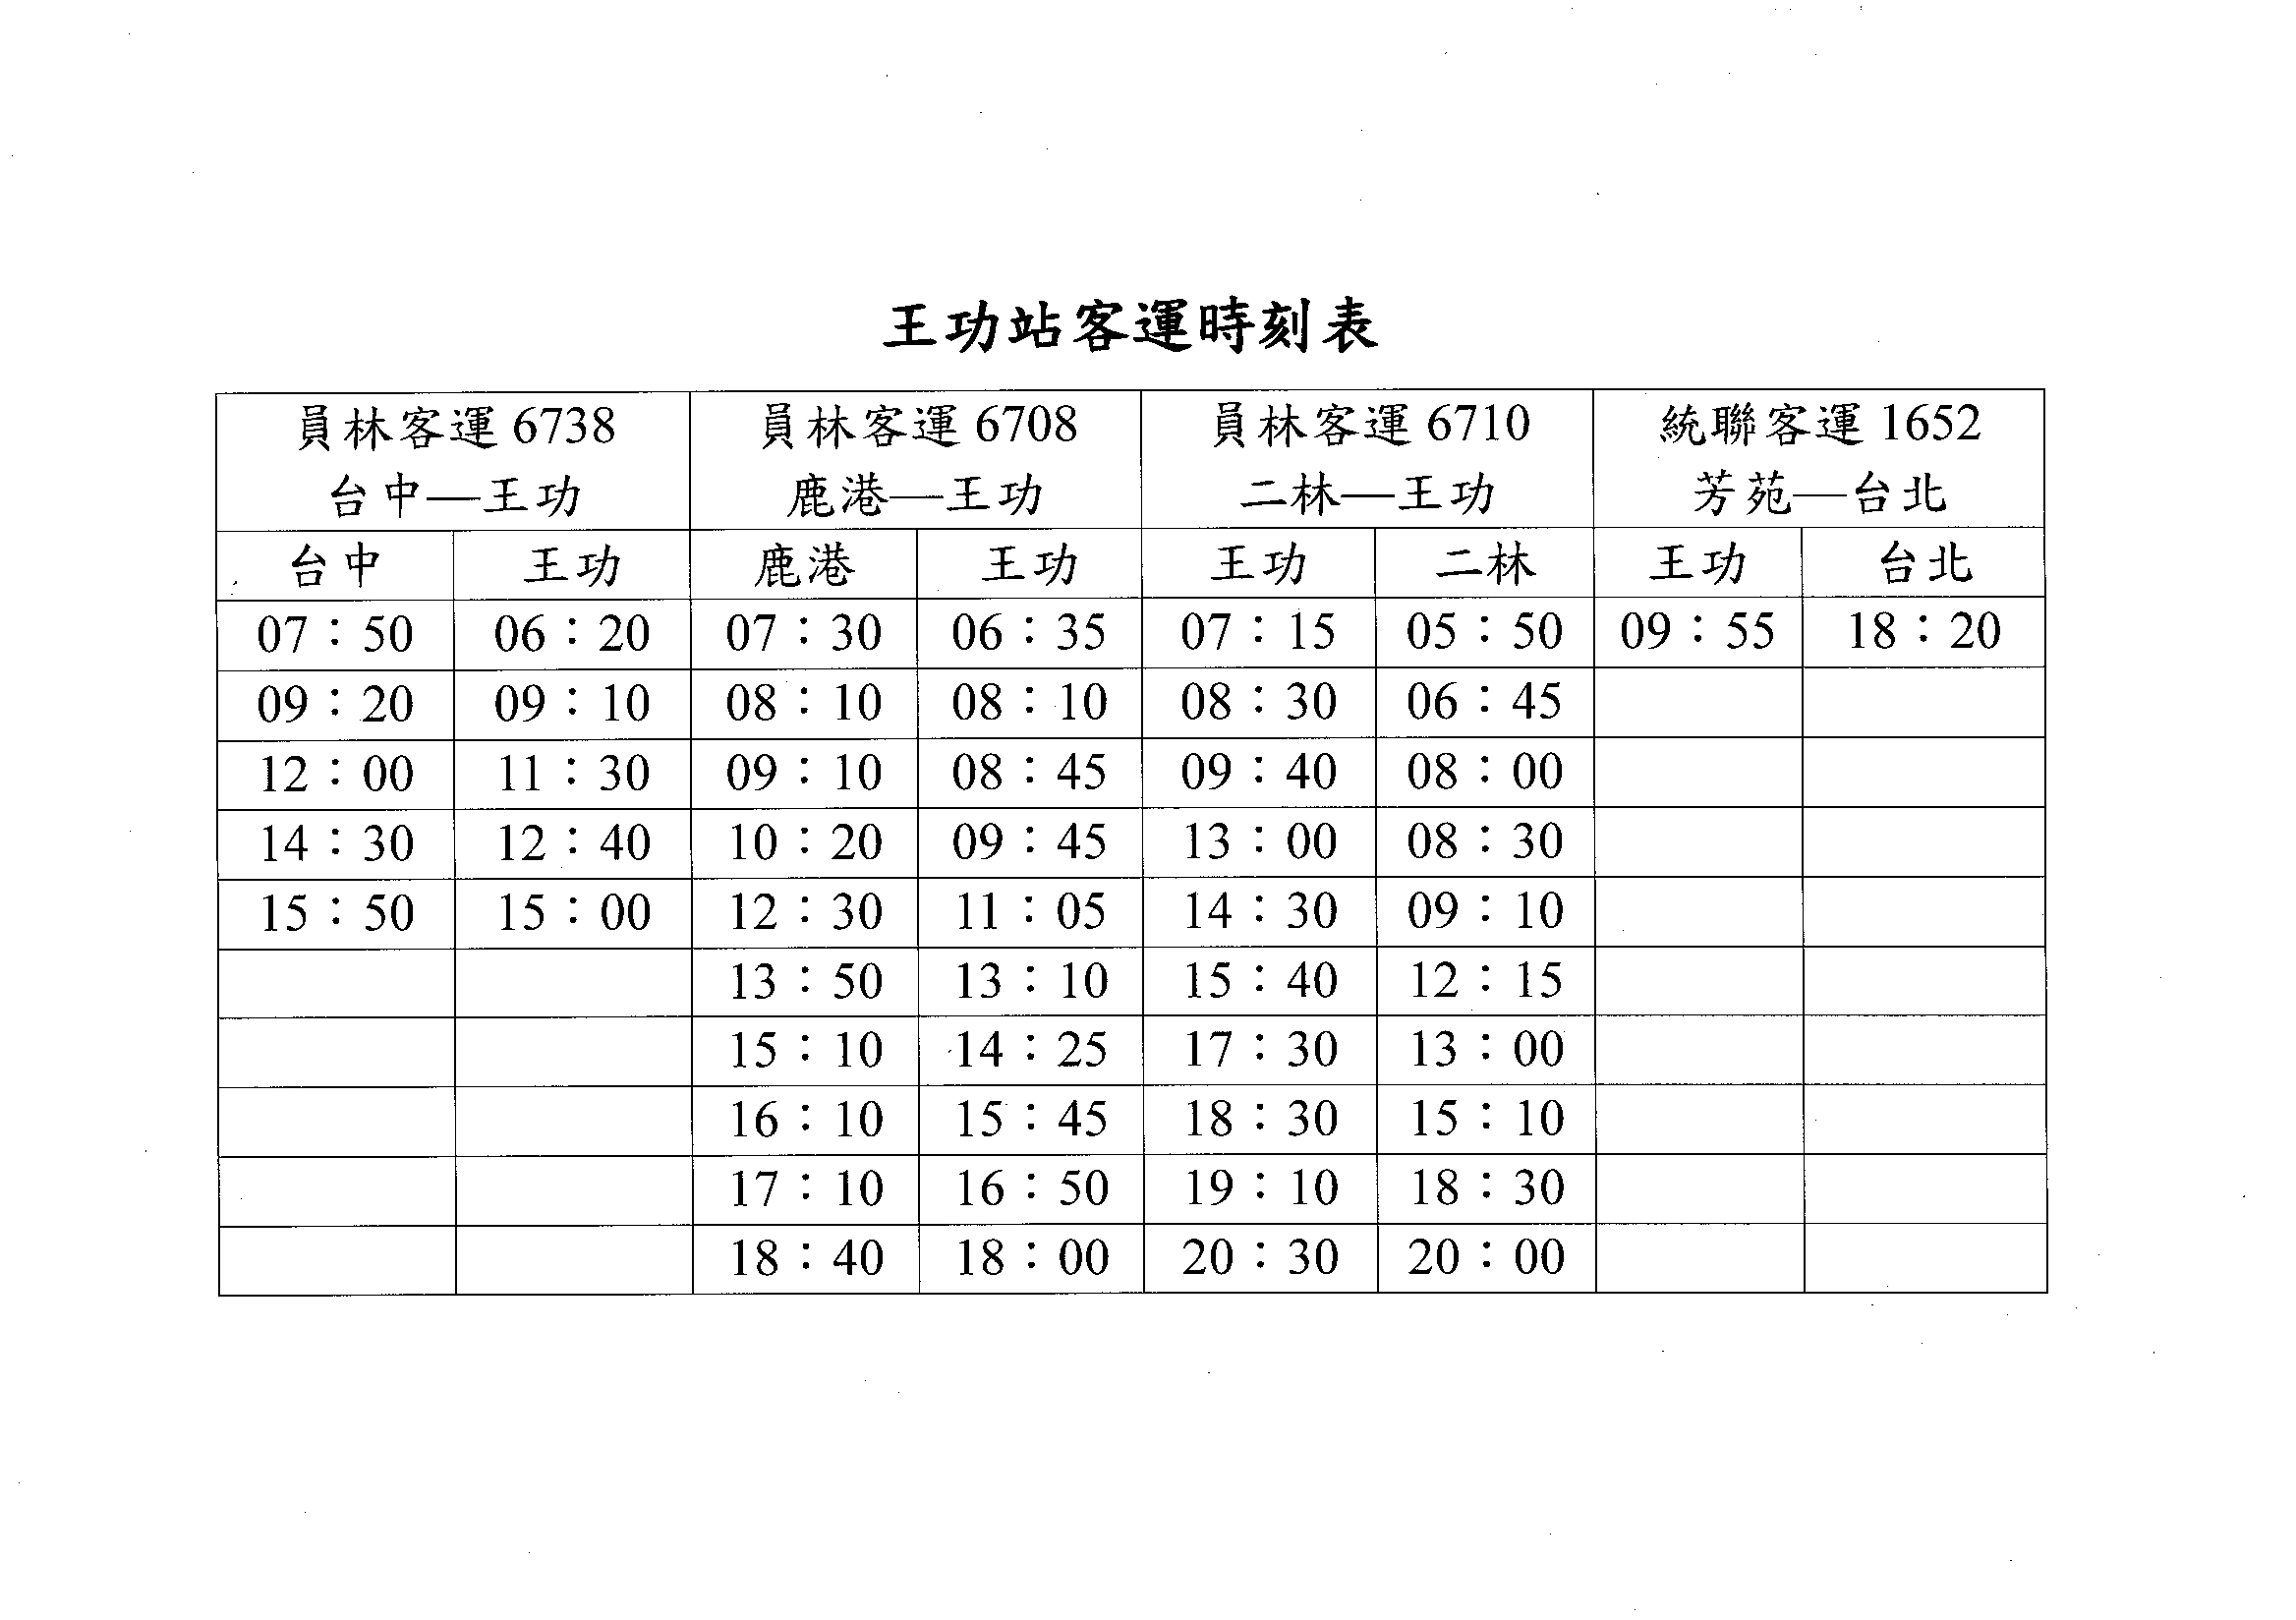 王功站公車時刻表